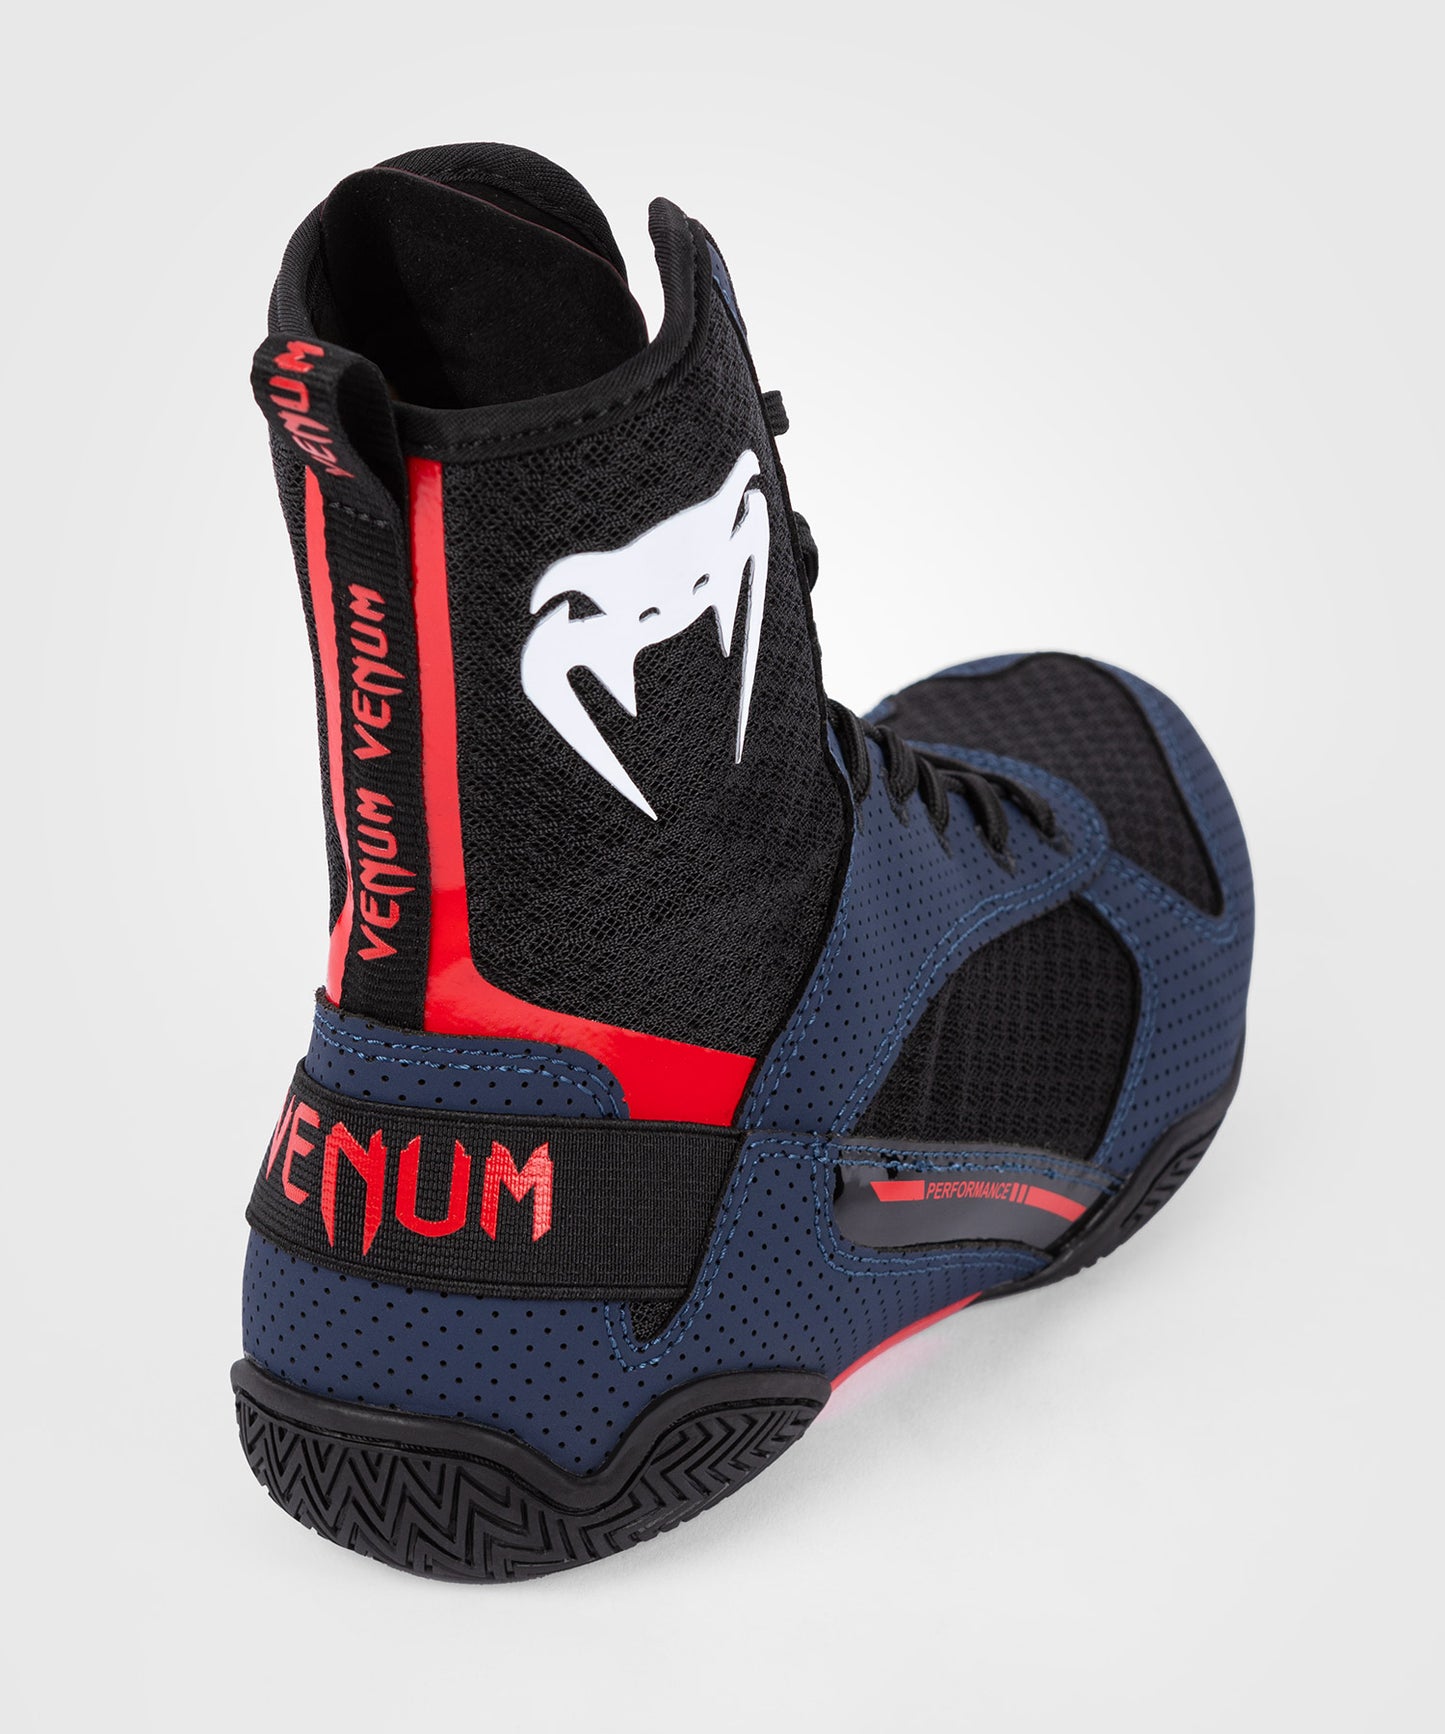 Venum Elite Zapatillas de Boxeo - Azul Marino/Negro/Rojo